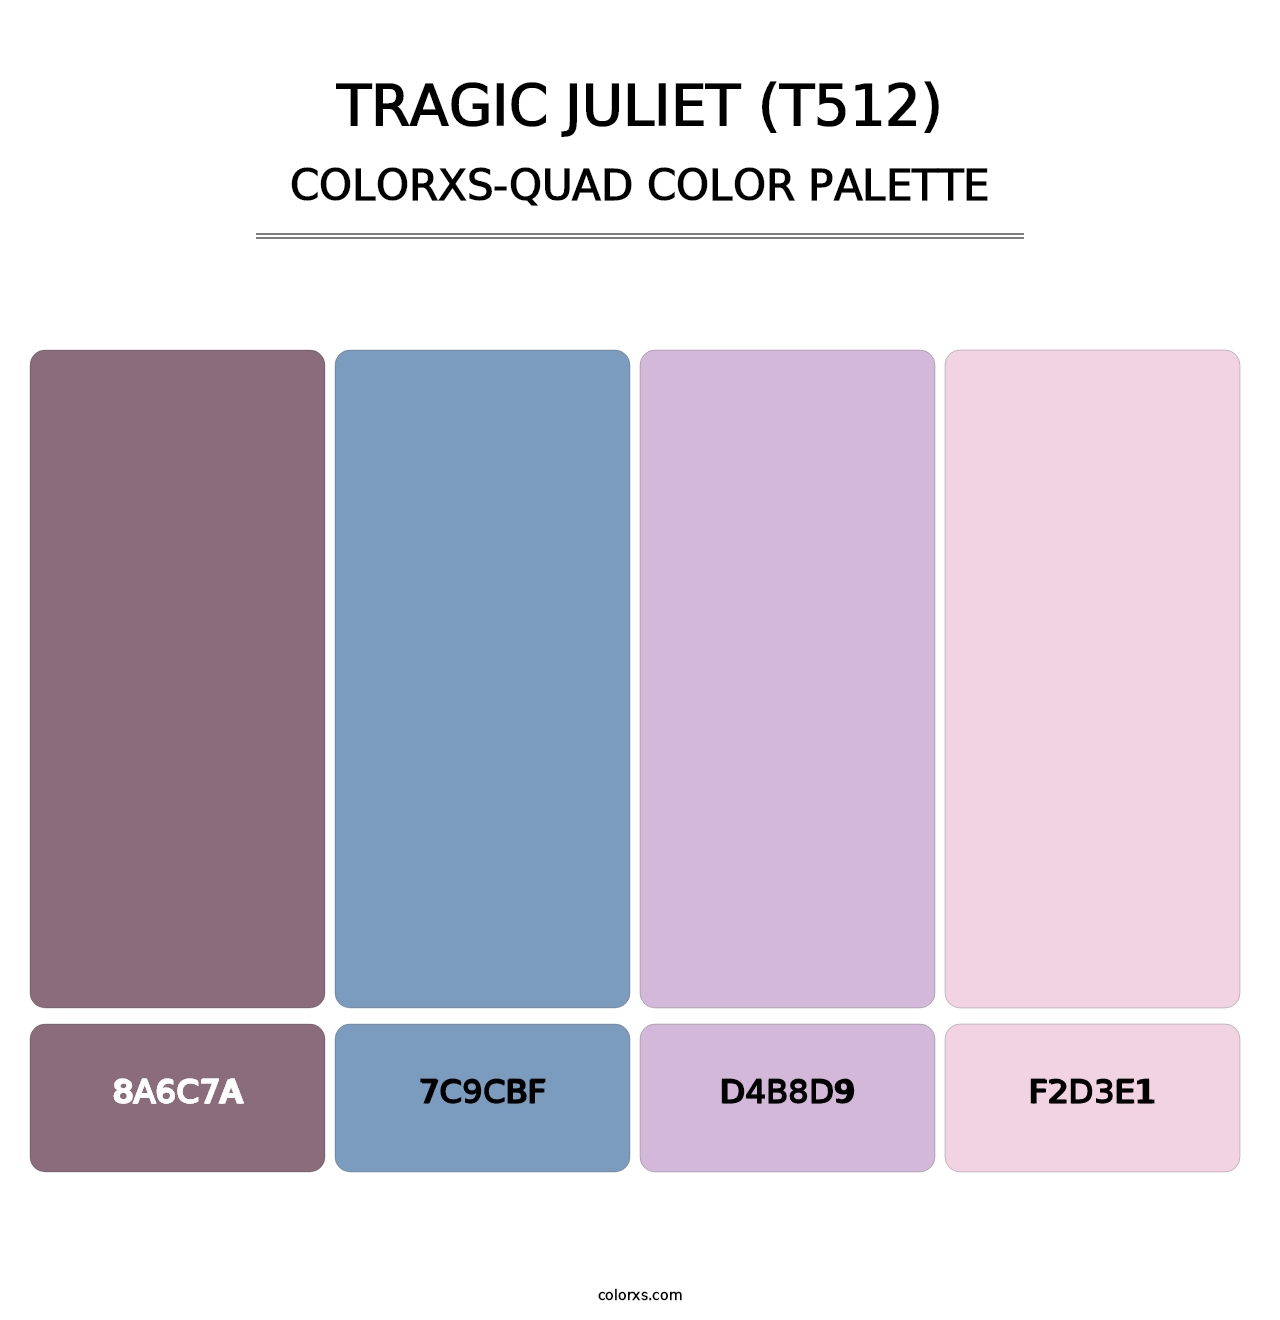 Tragic Juliet (T512) - Colorxs Quad Palette